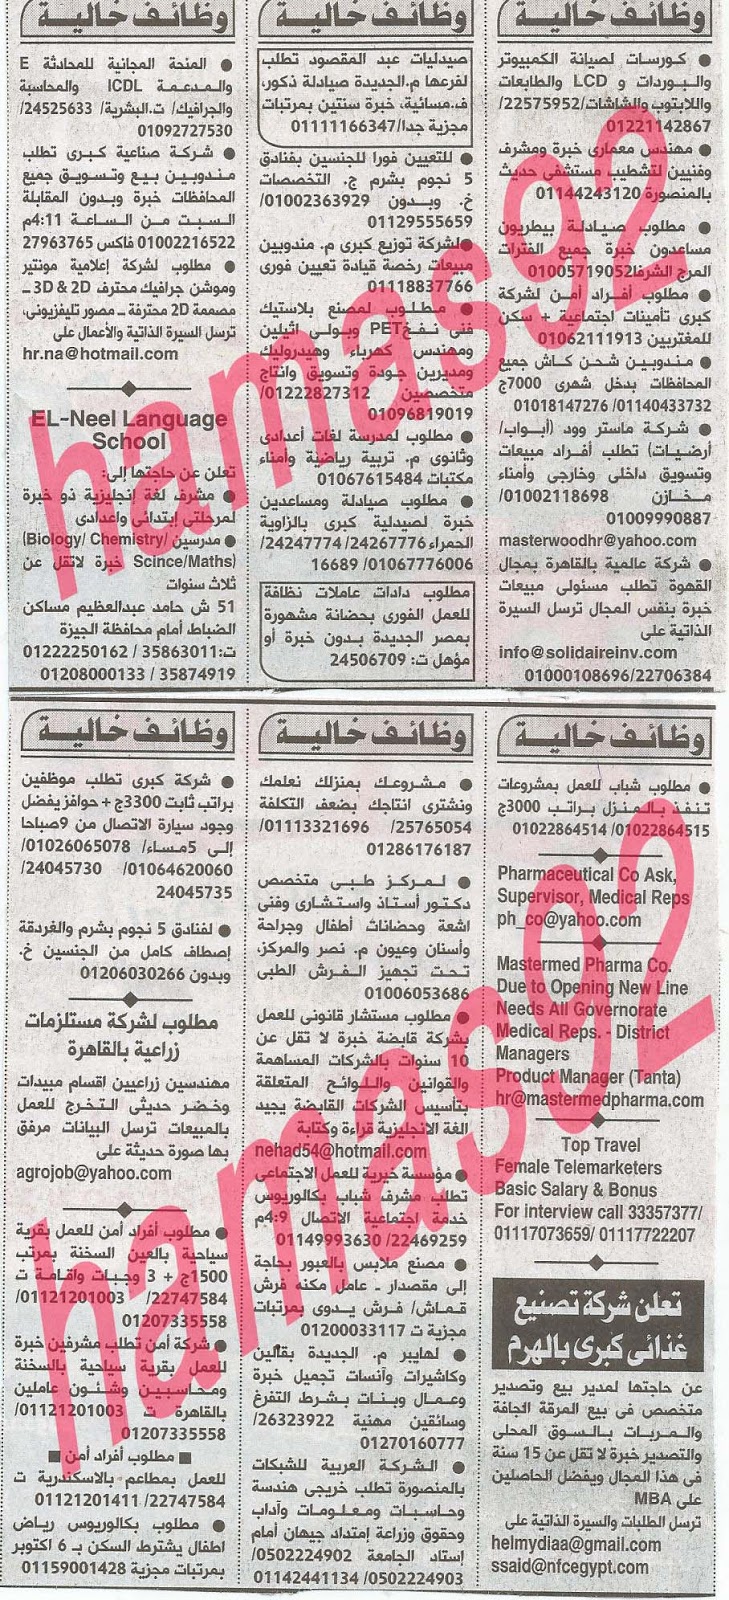 وظائف خالية فى جريدة الاهرام الجمعة 26-07-2013 2